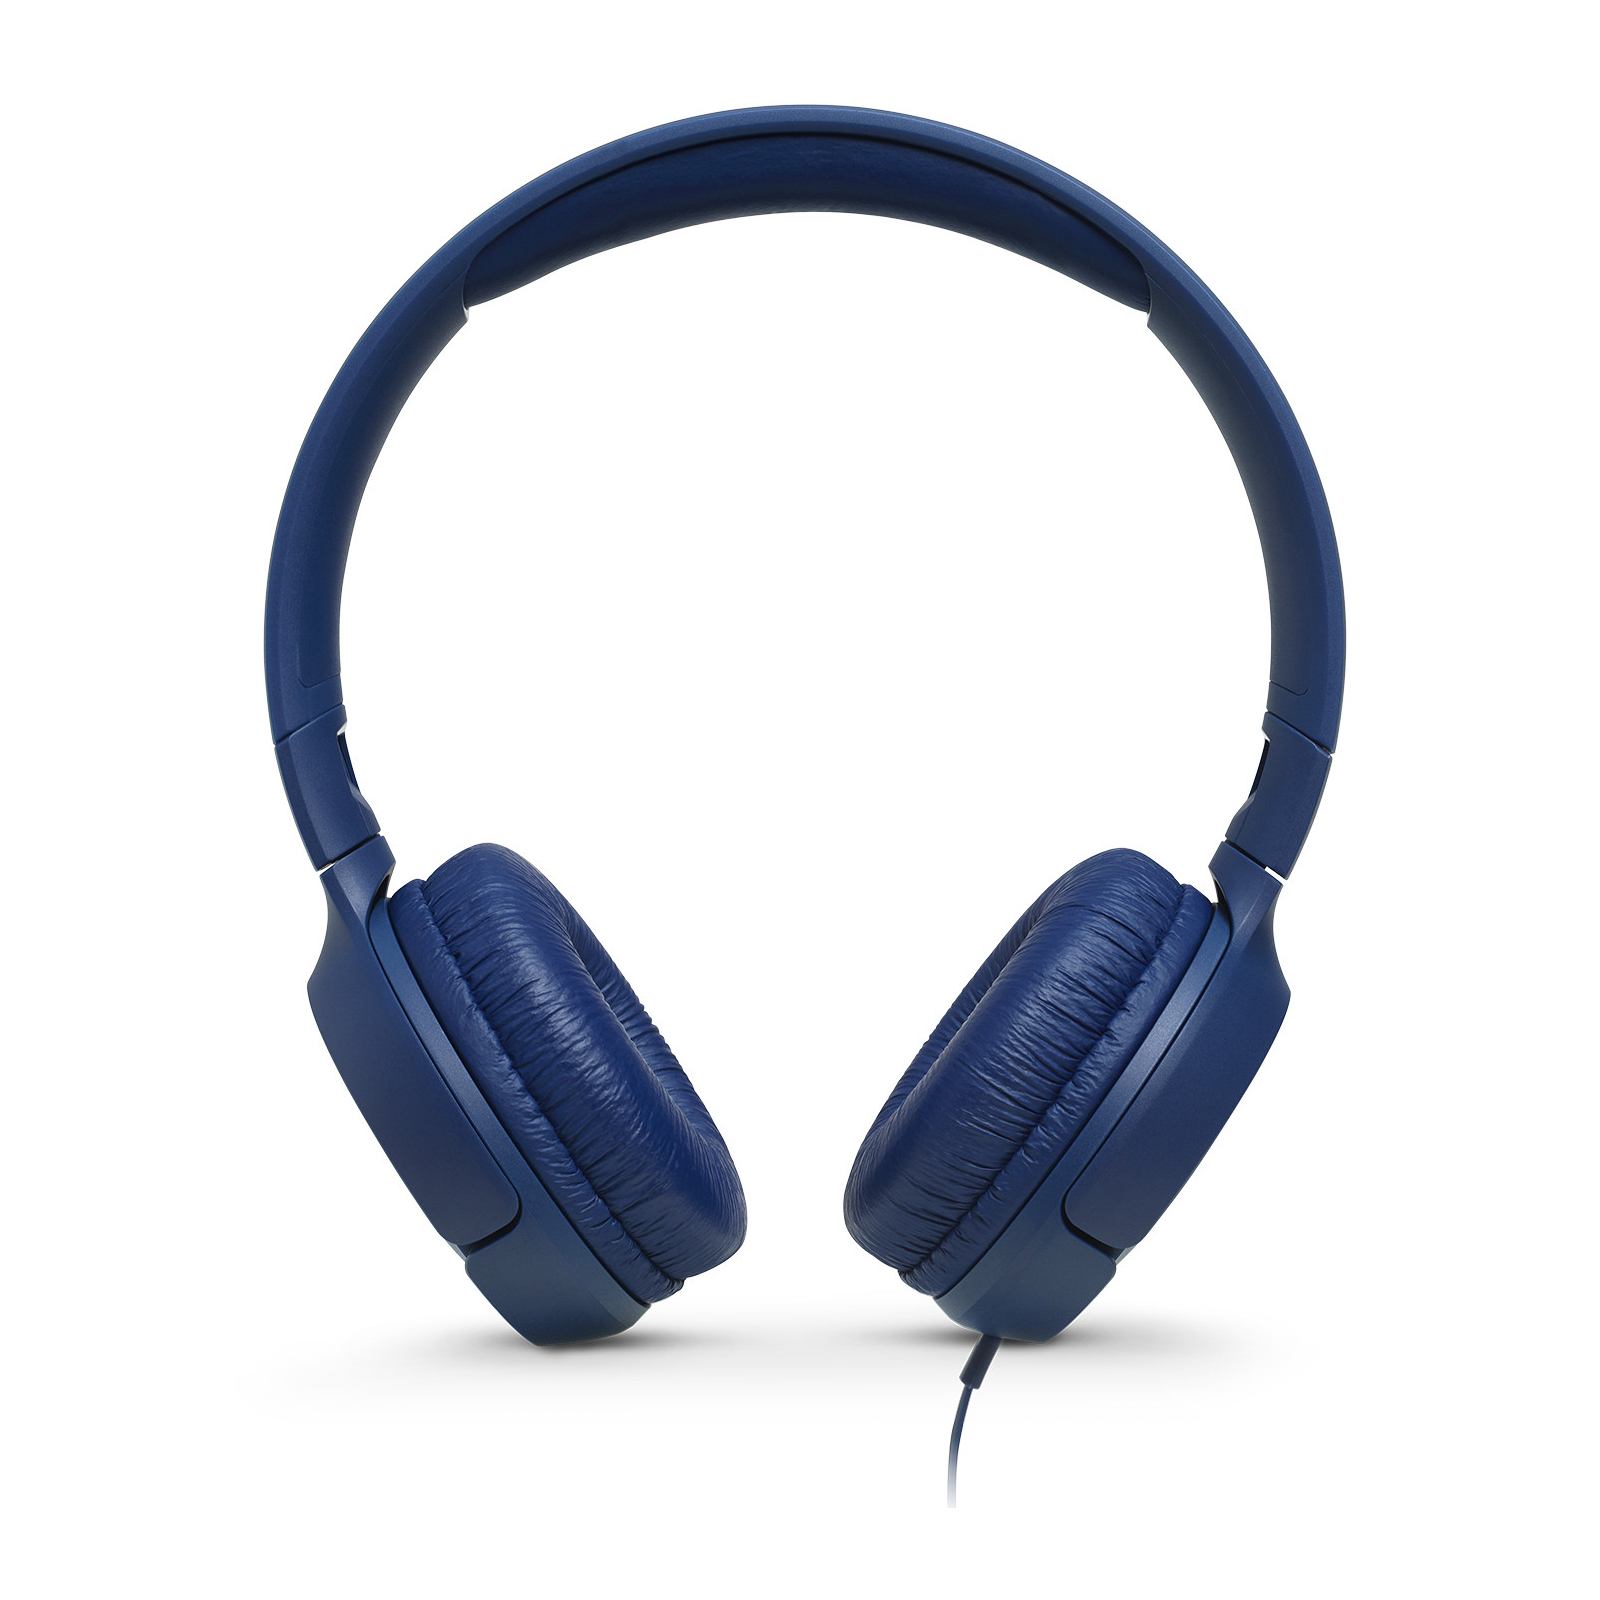 Навушники JBL T500 Blue (JBLT500BLU) зображення 2